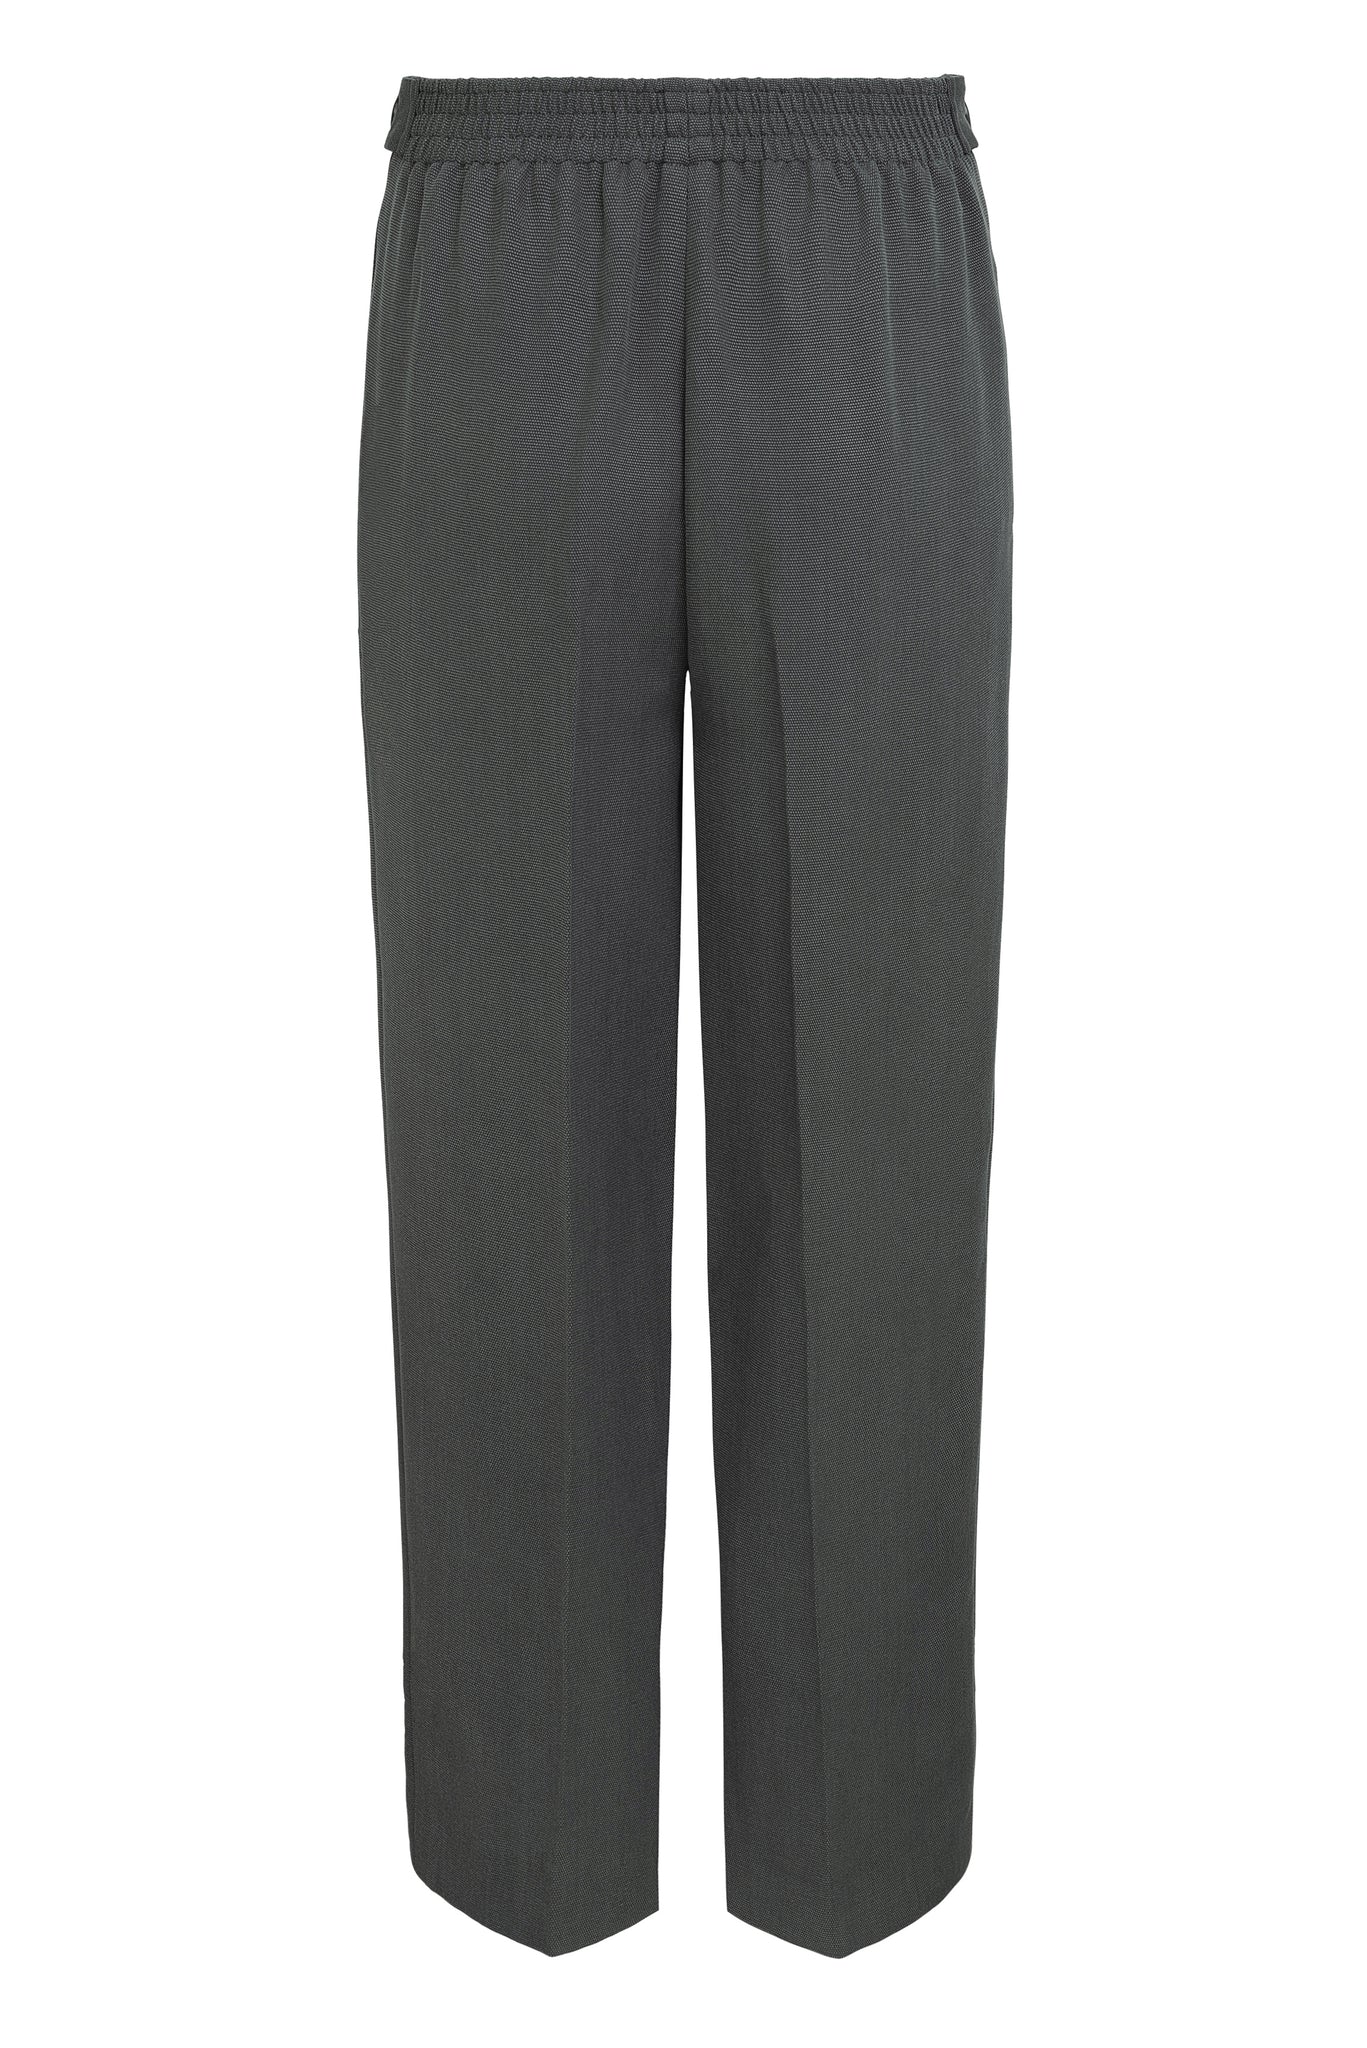 03/16 Mid-Waist Pants Tencel dark grey back - hello'ben store